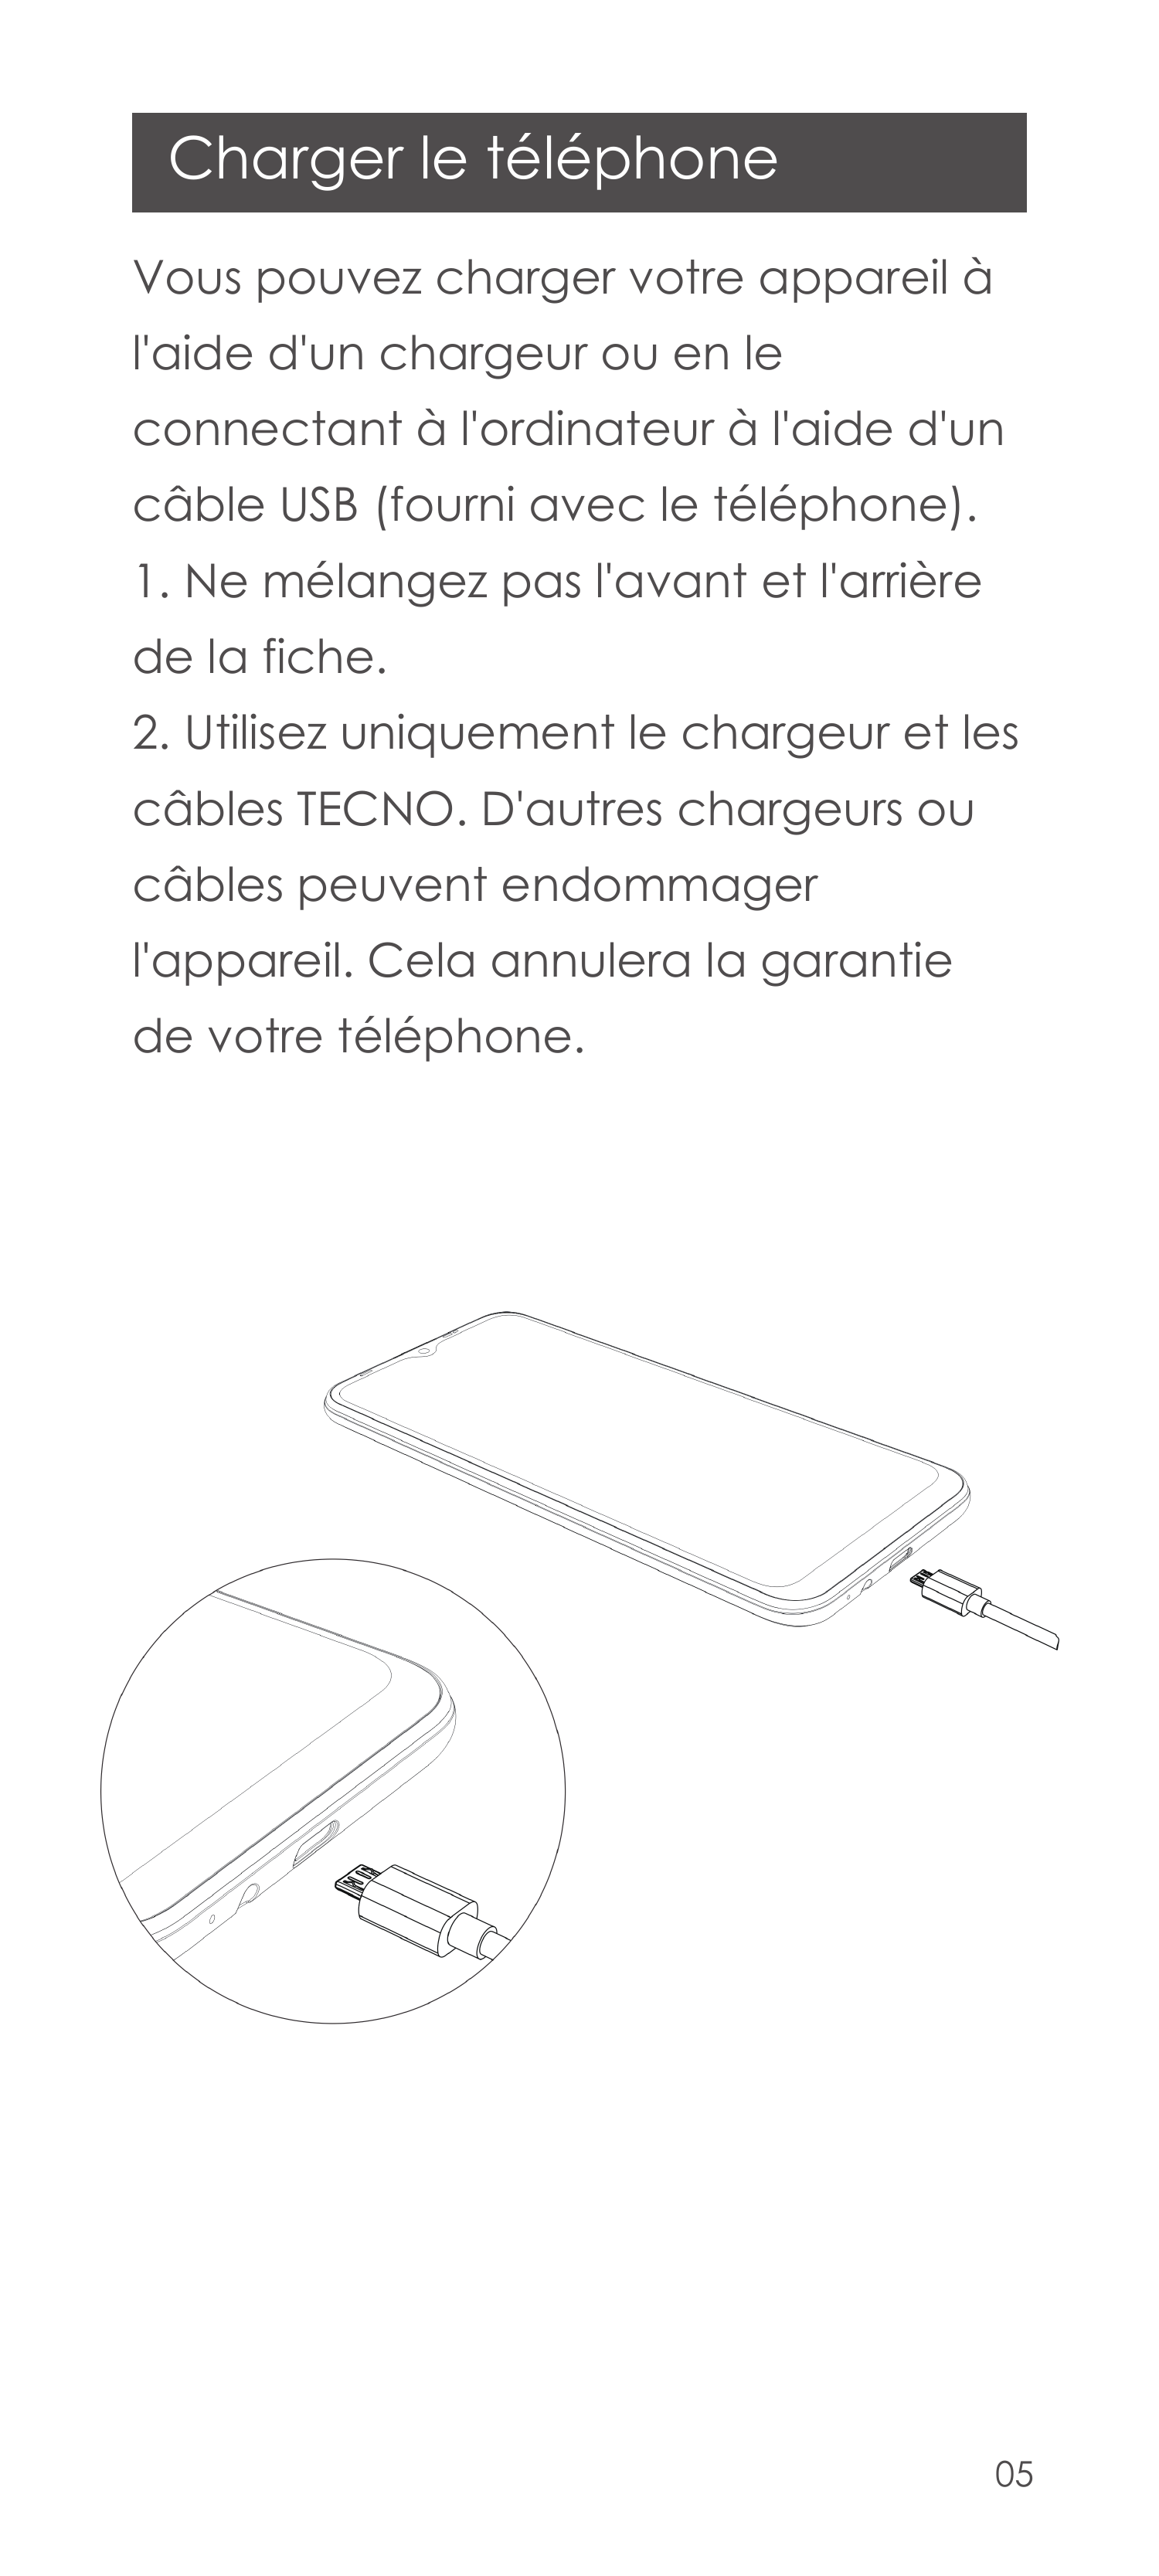 Charger le téléphoneVous pouvez charger votre appareil àl'aide d'un chargeur ou en leconnectant à l'ordinateur à l'aide d'uncâbl